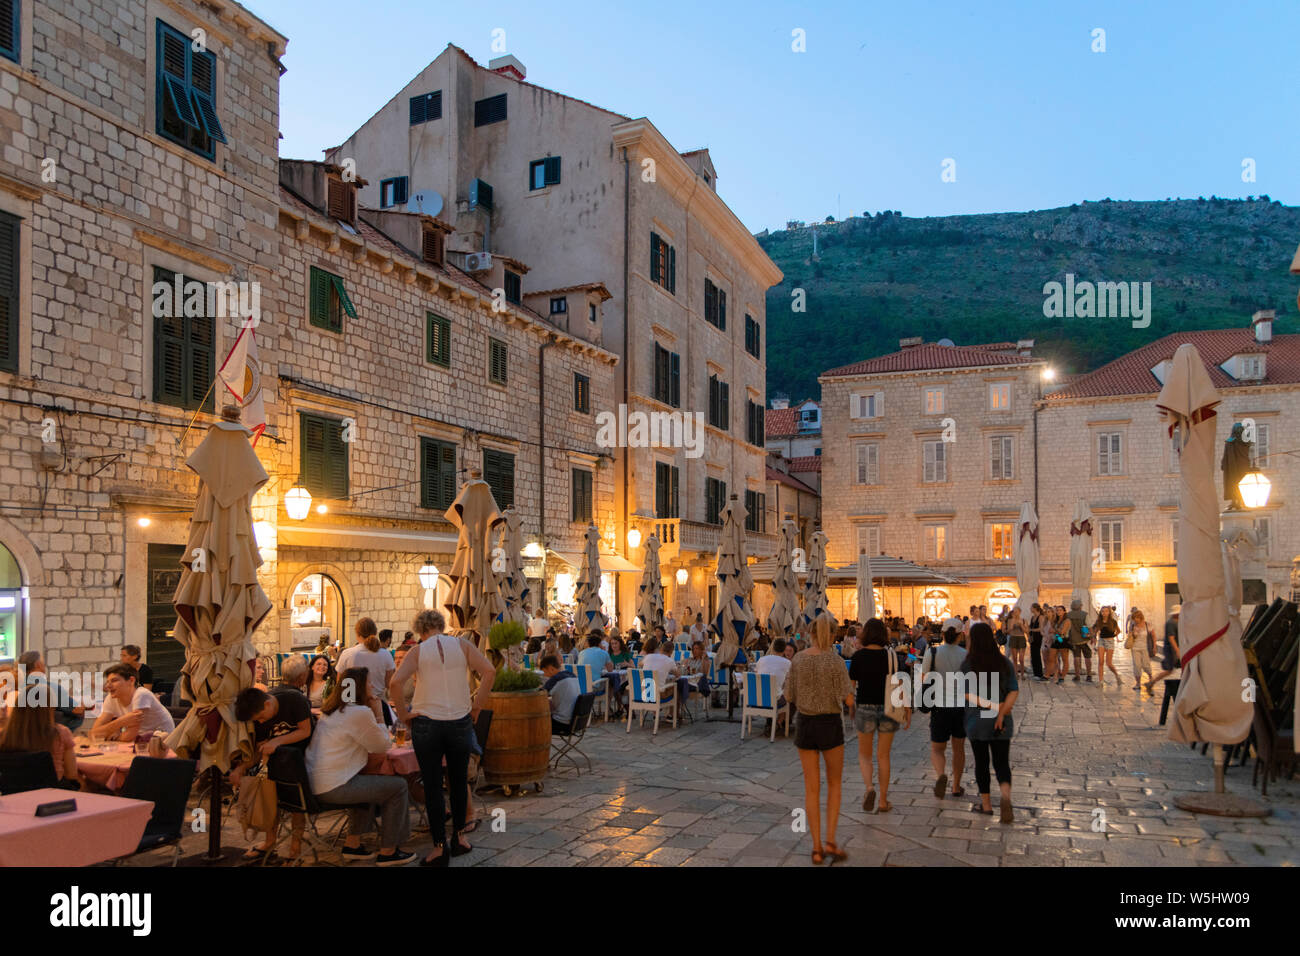 À l'intérieur des murs de la vieille ville de Dubrovnik, Croatie Banque D'Images